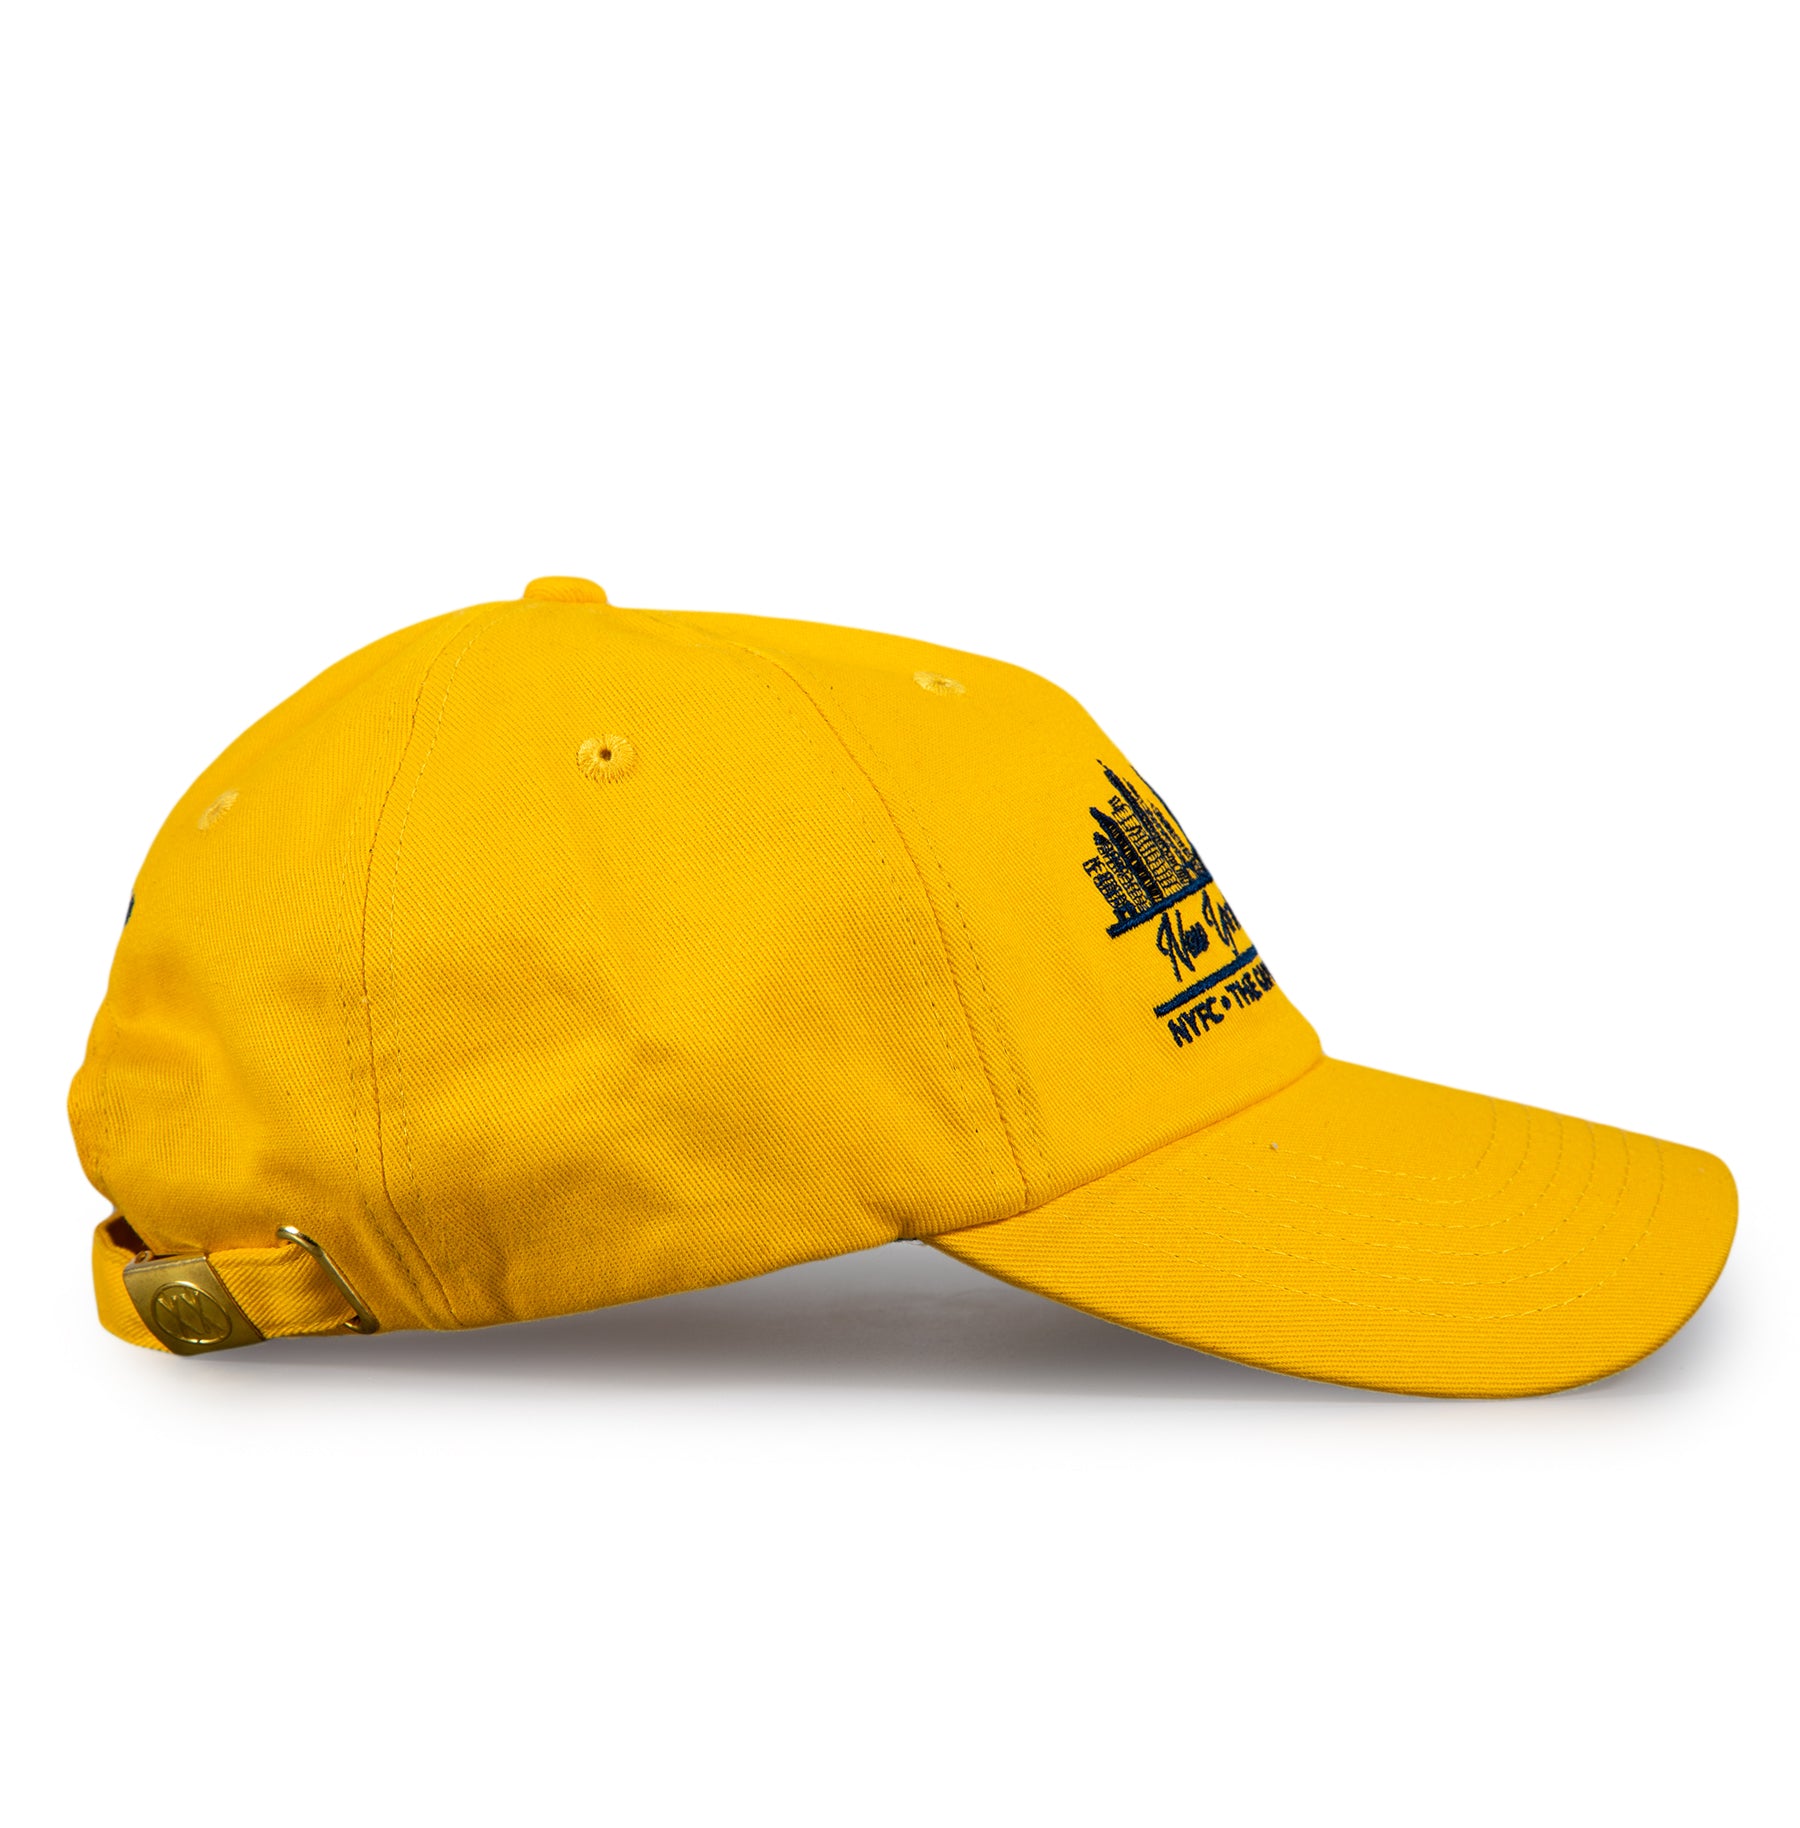 NYFC Dad Caps (yellow)